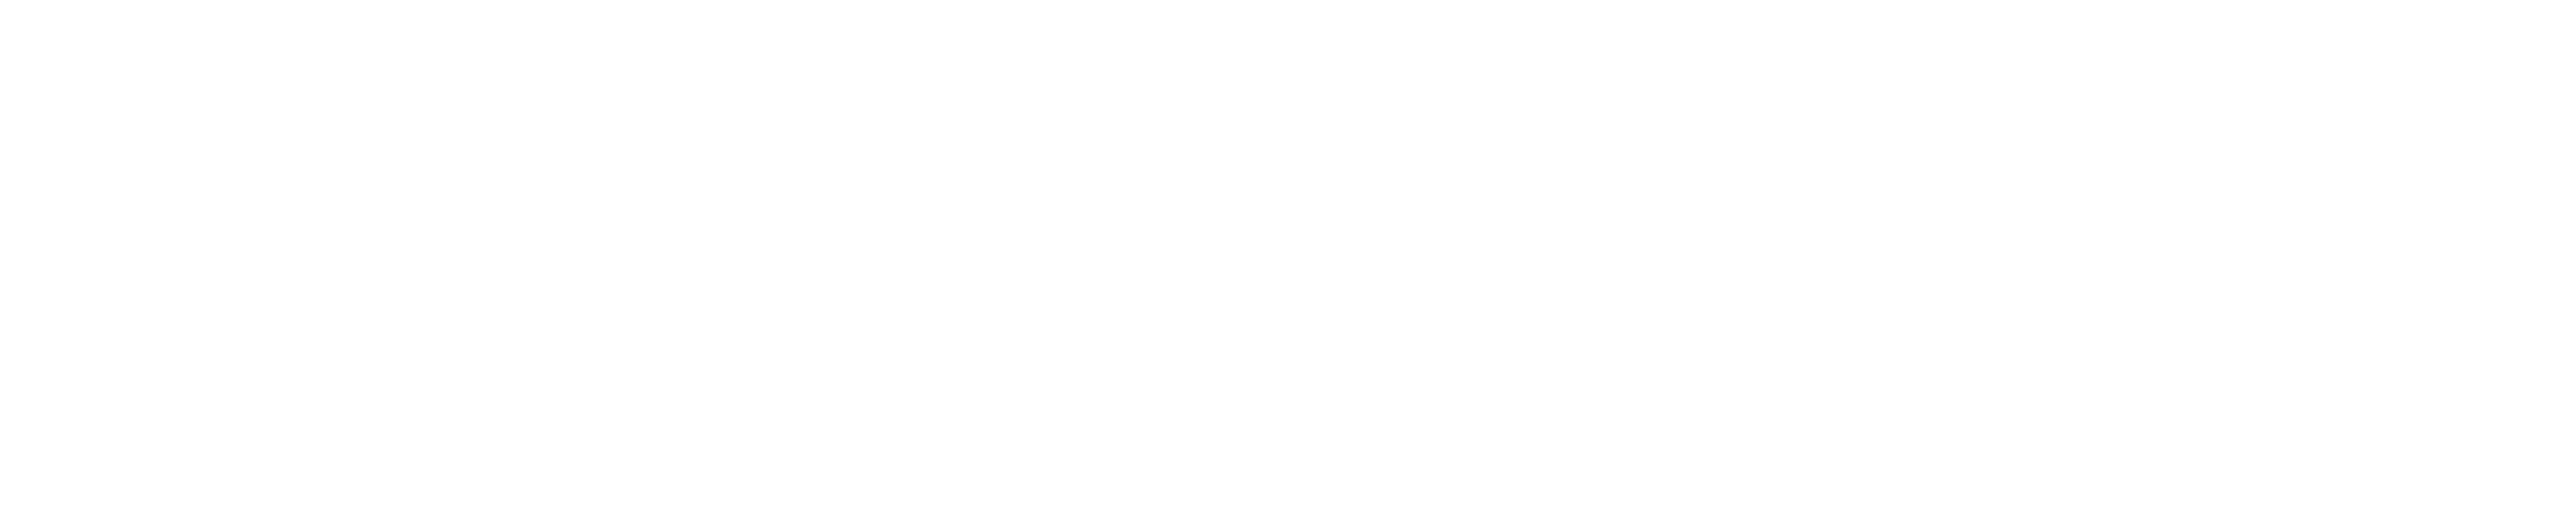 Gatemore logo